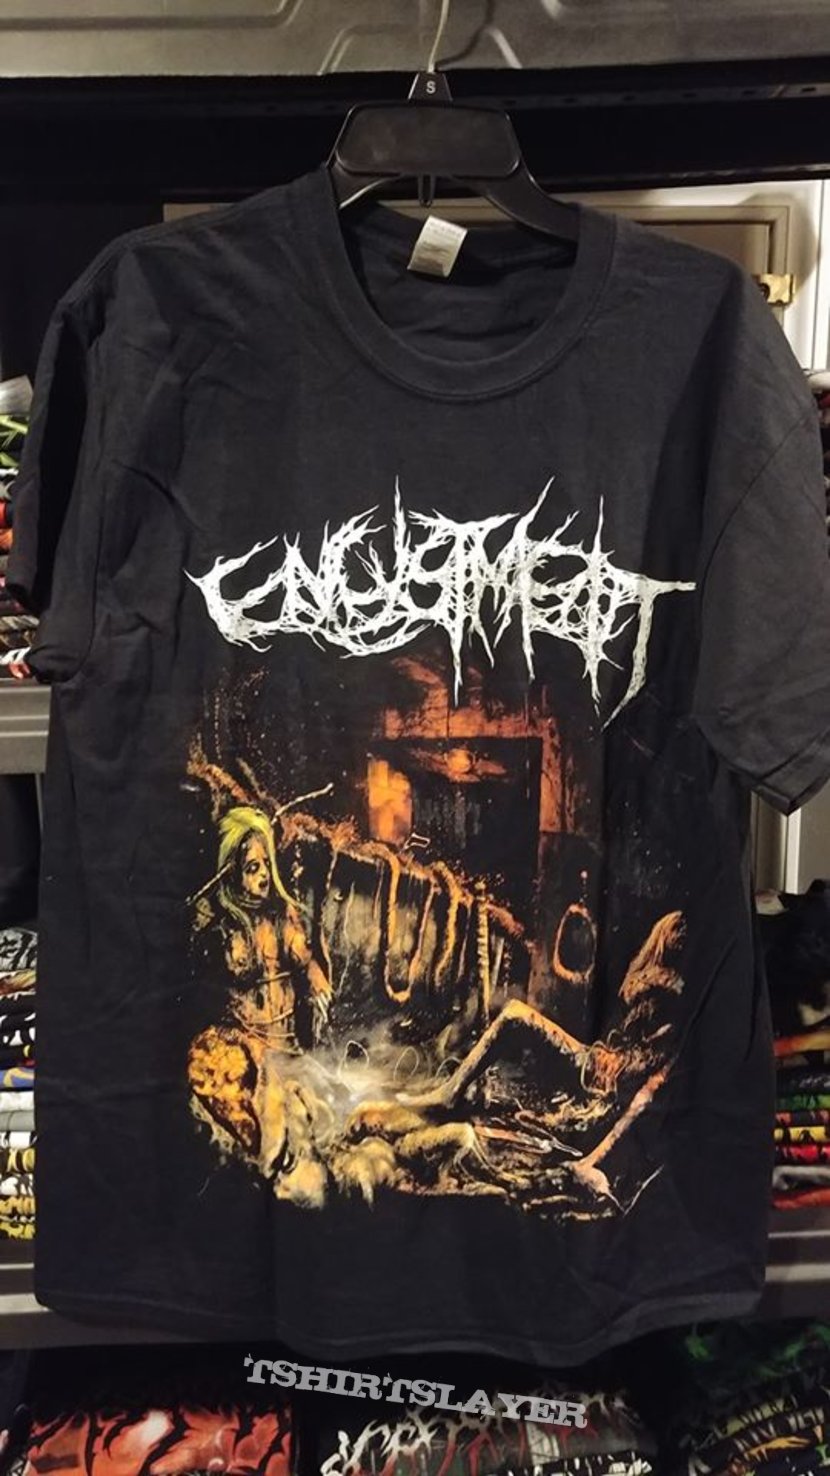 Encystment t-shirt